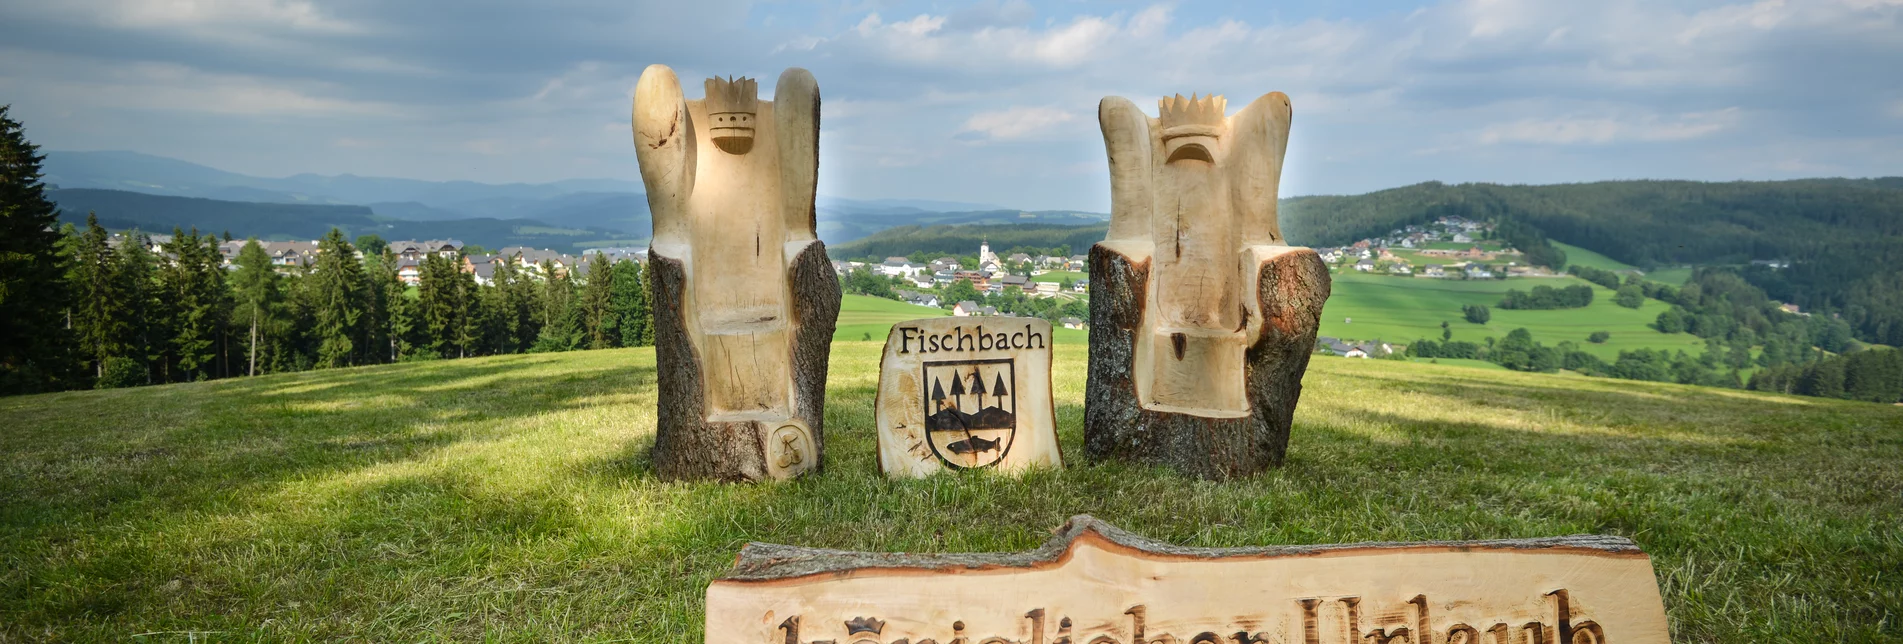 Fischbach - Impression #1